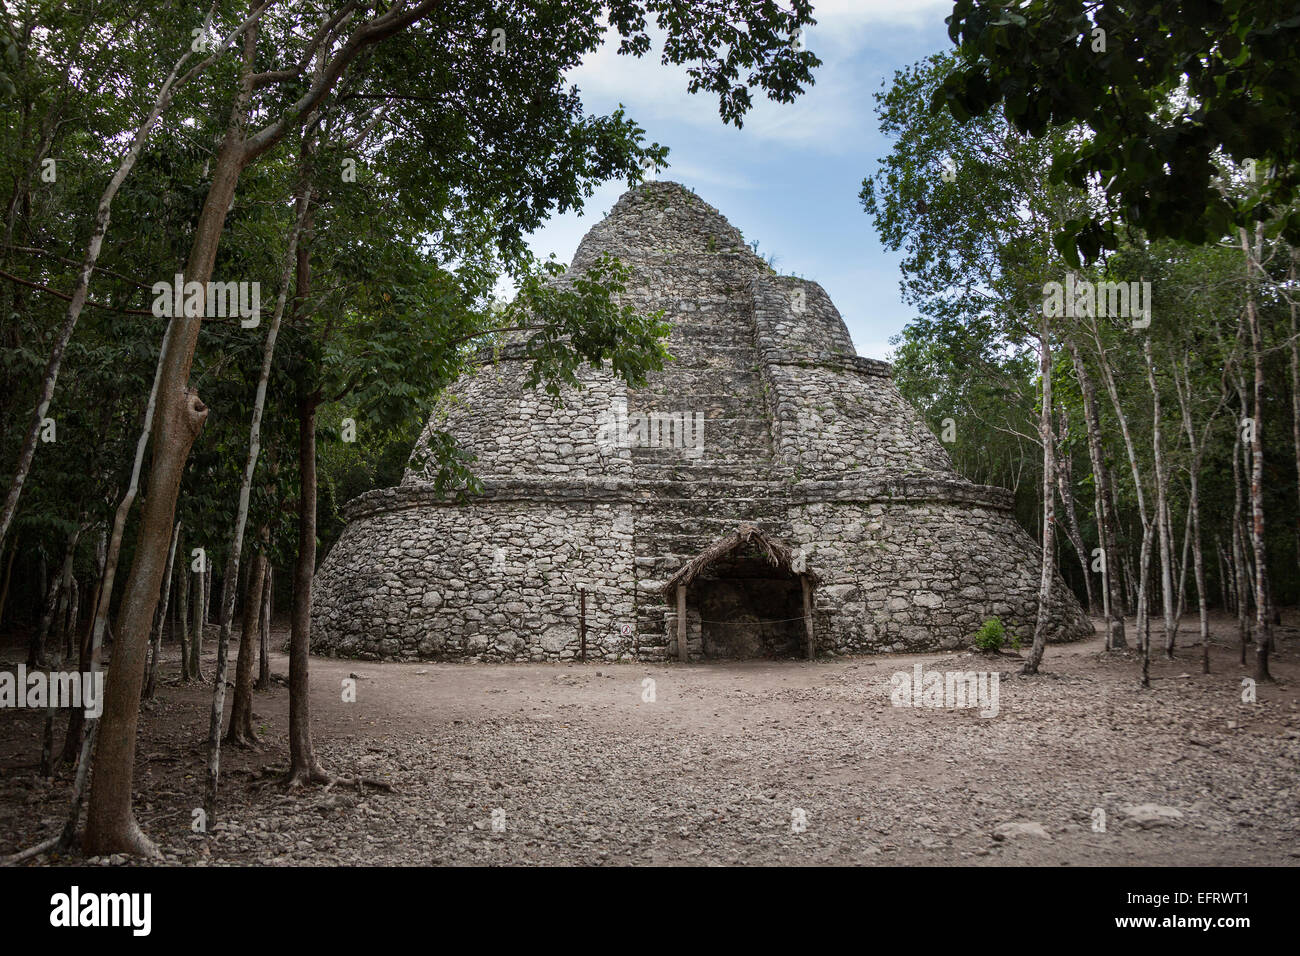 Coba rovine pyrooramid civiltà Maya di Quintana Roo, Messico america del nord la religione Foto Stock